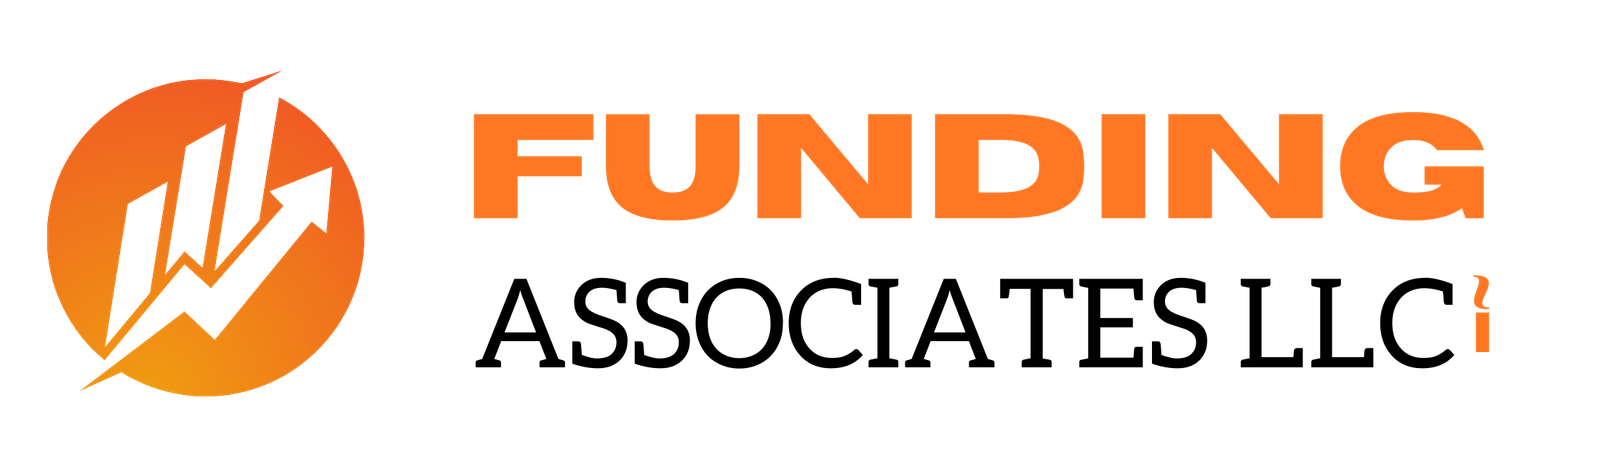 asdasdasd - Crunchbase Company Profile & Funding